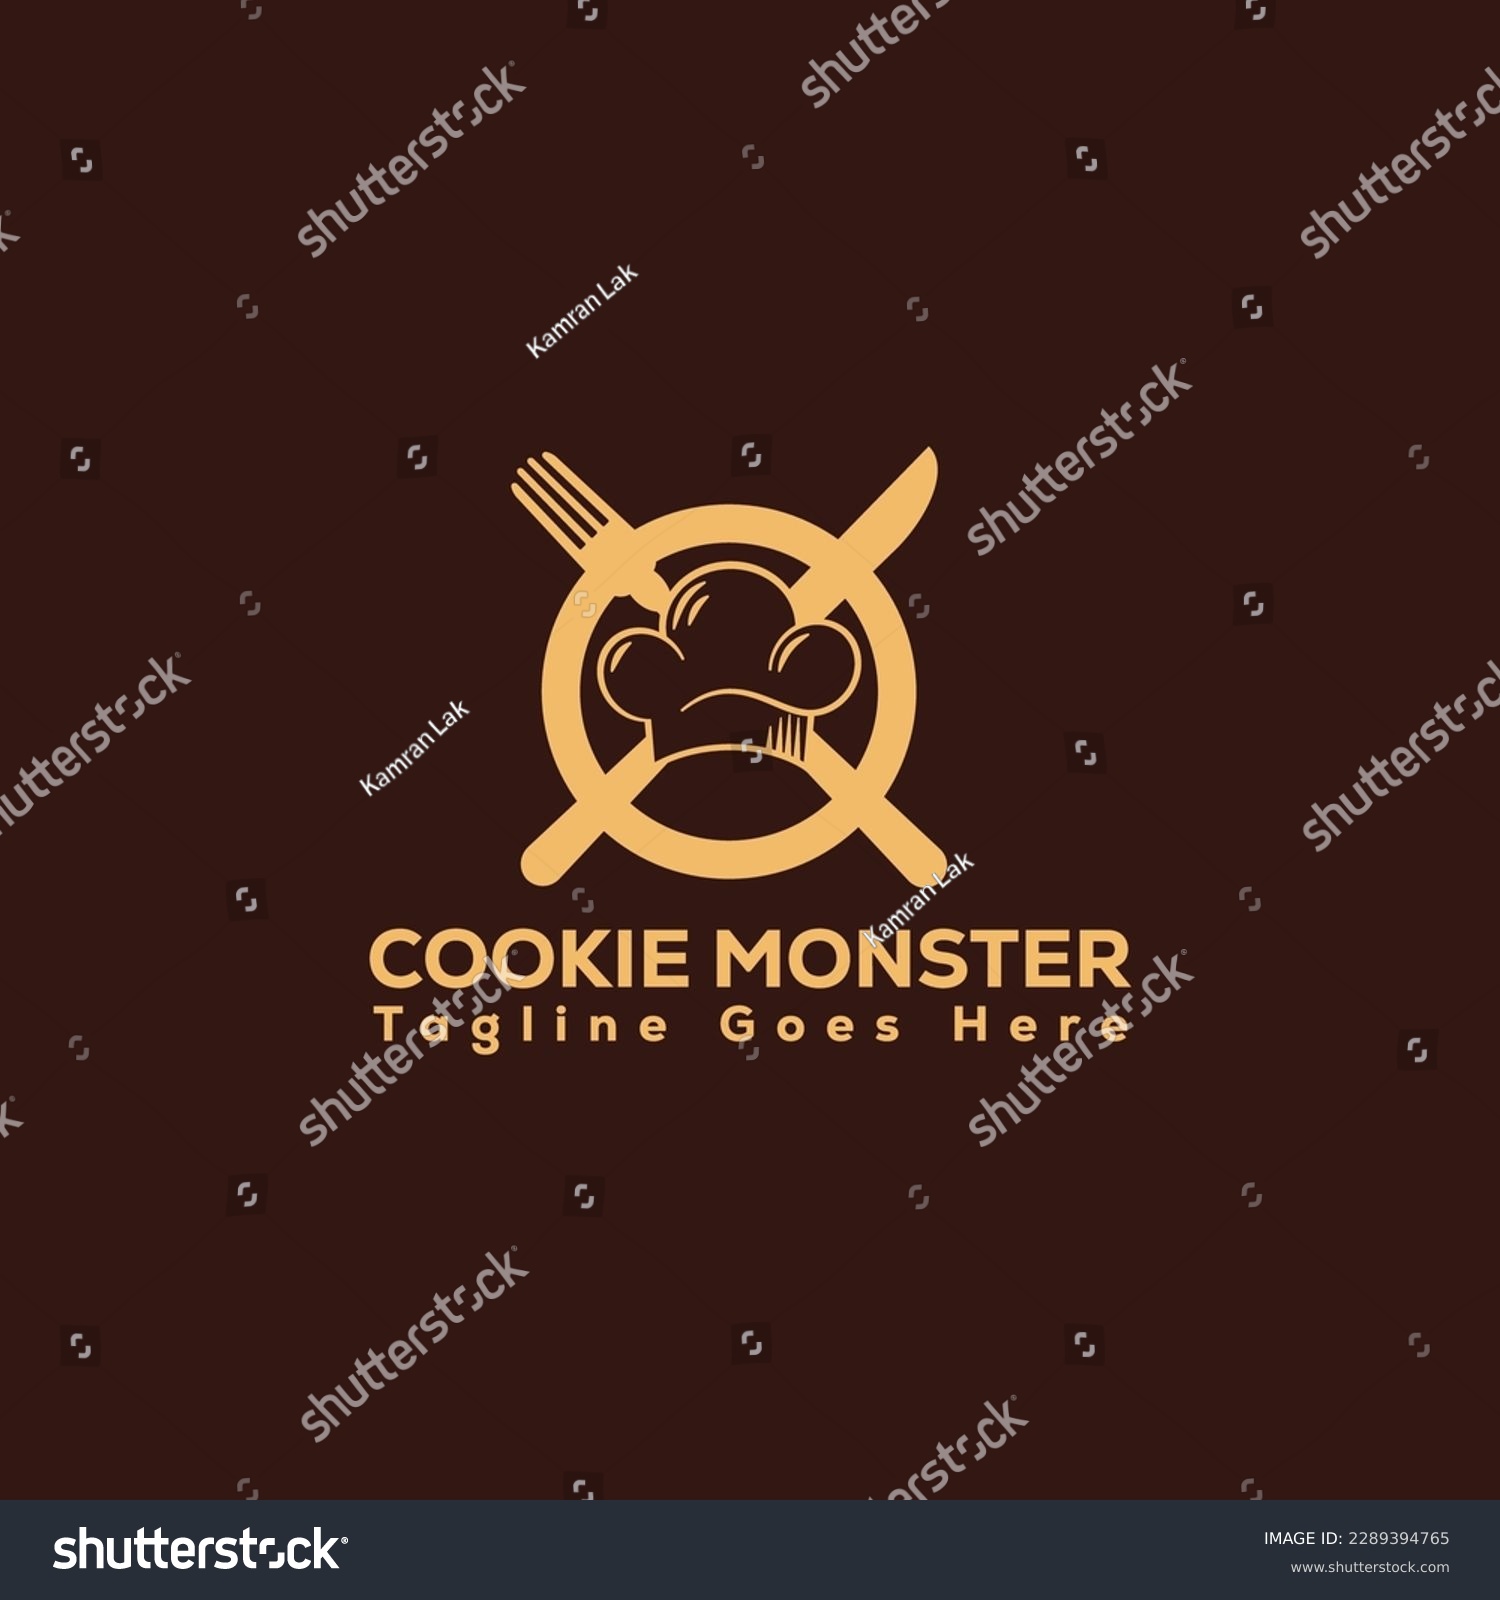 SVG of cookie monster logo, vintage and business logo design. svg